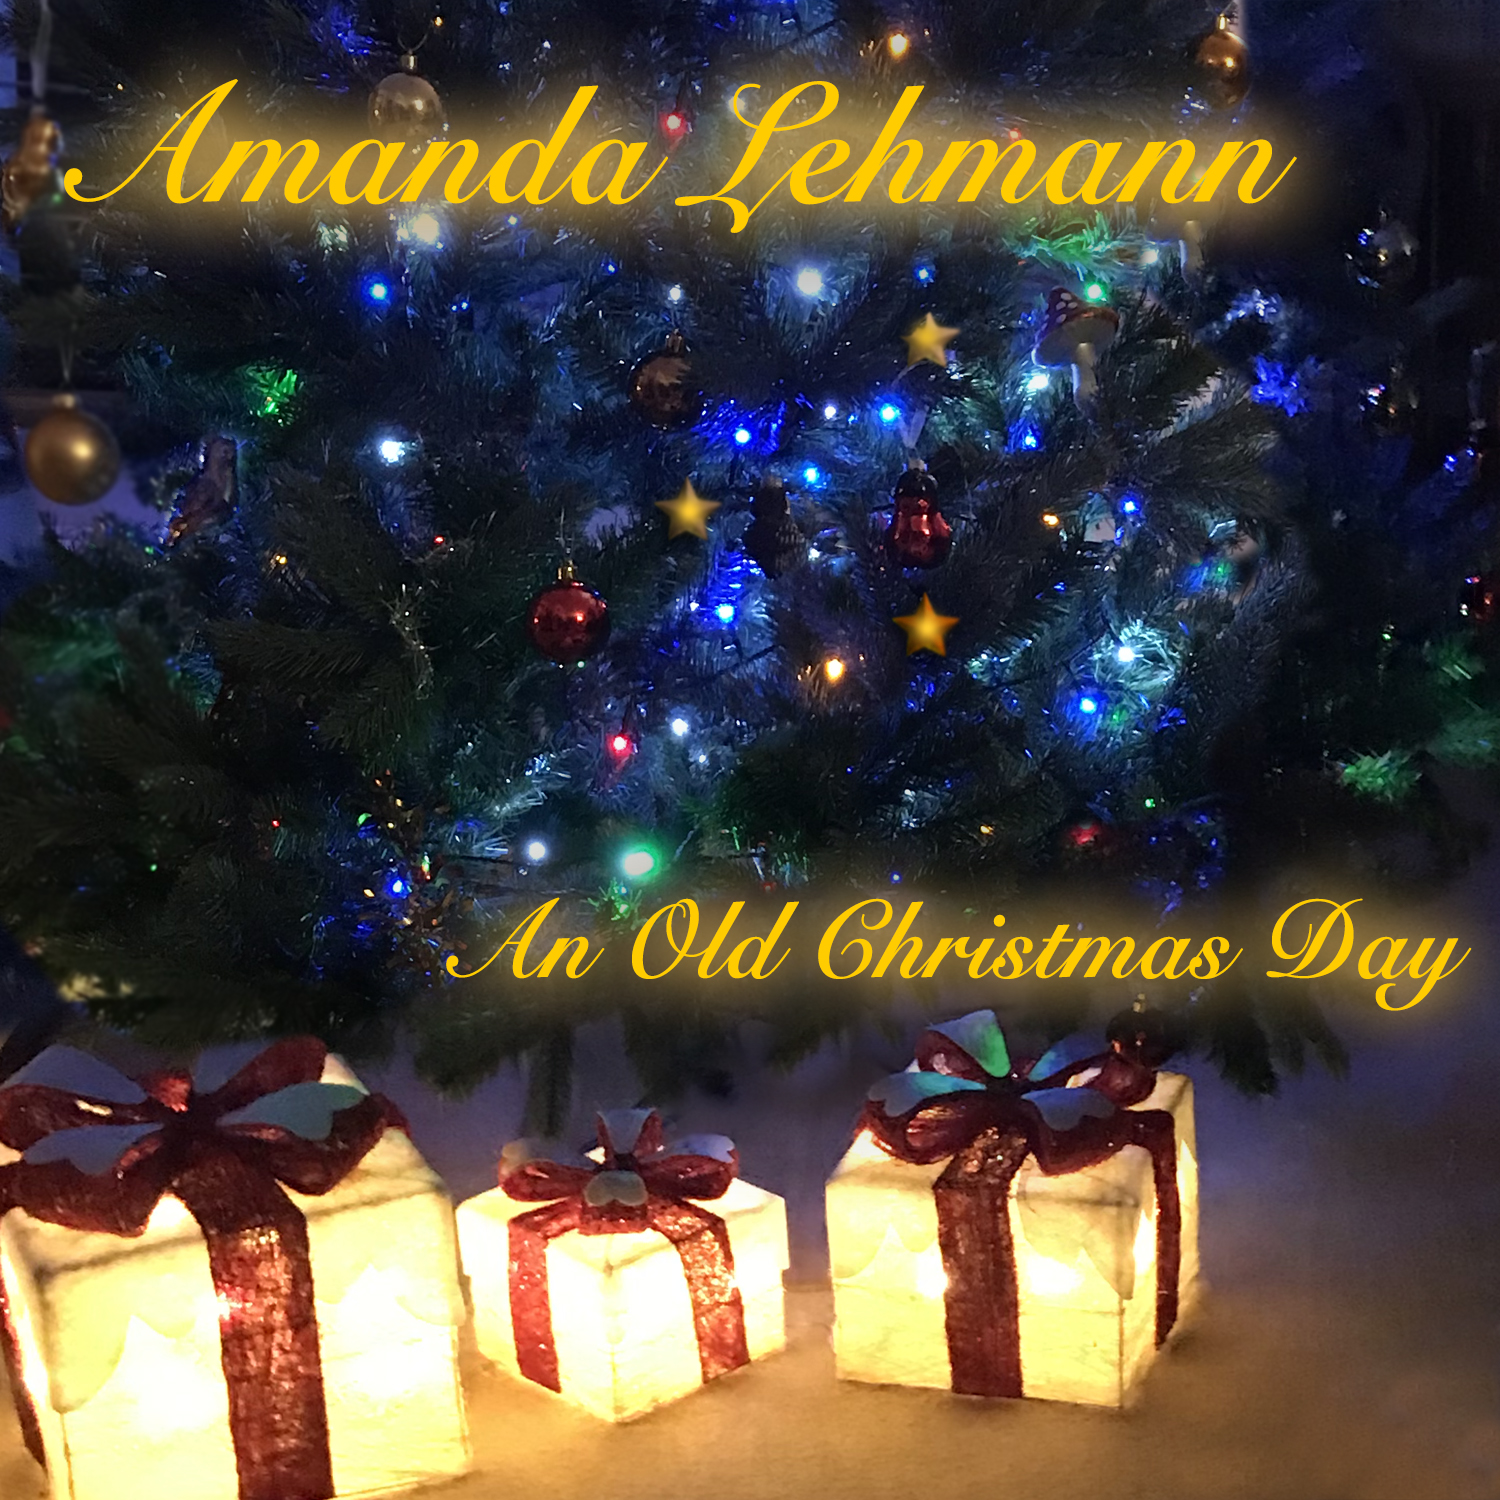 Amanda Lehmann - An Old Christmas Day